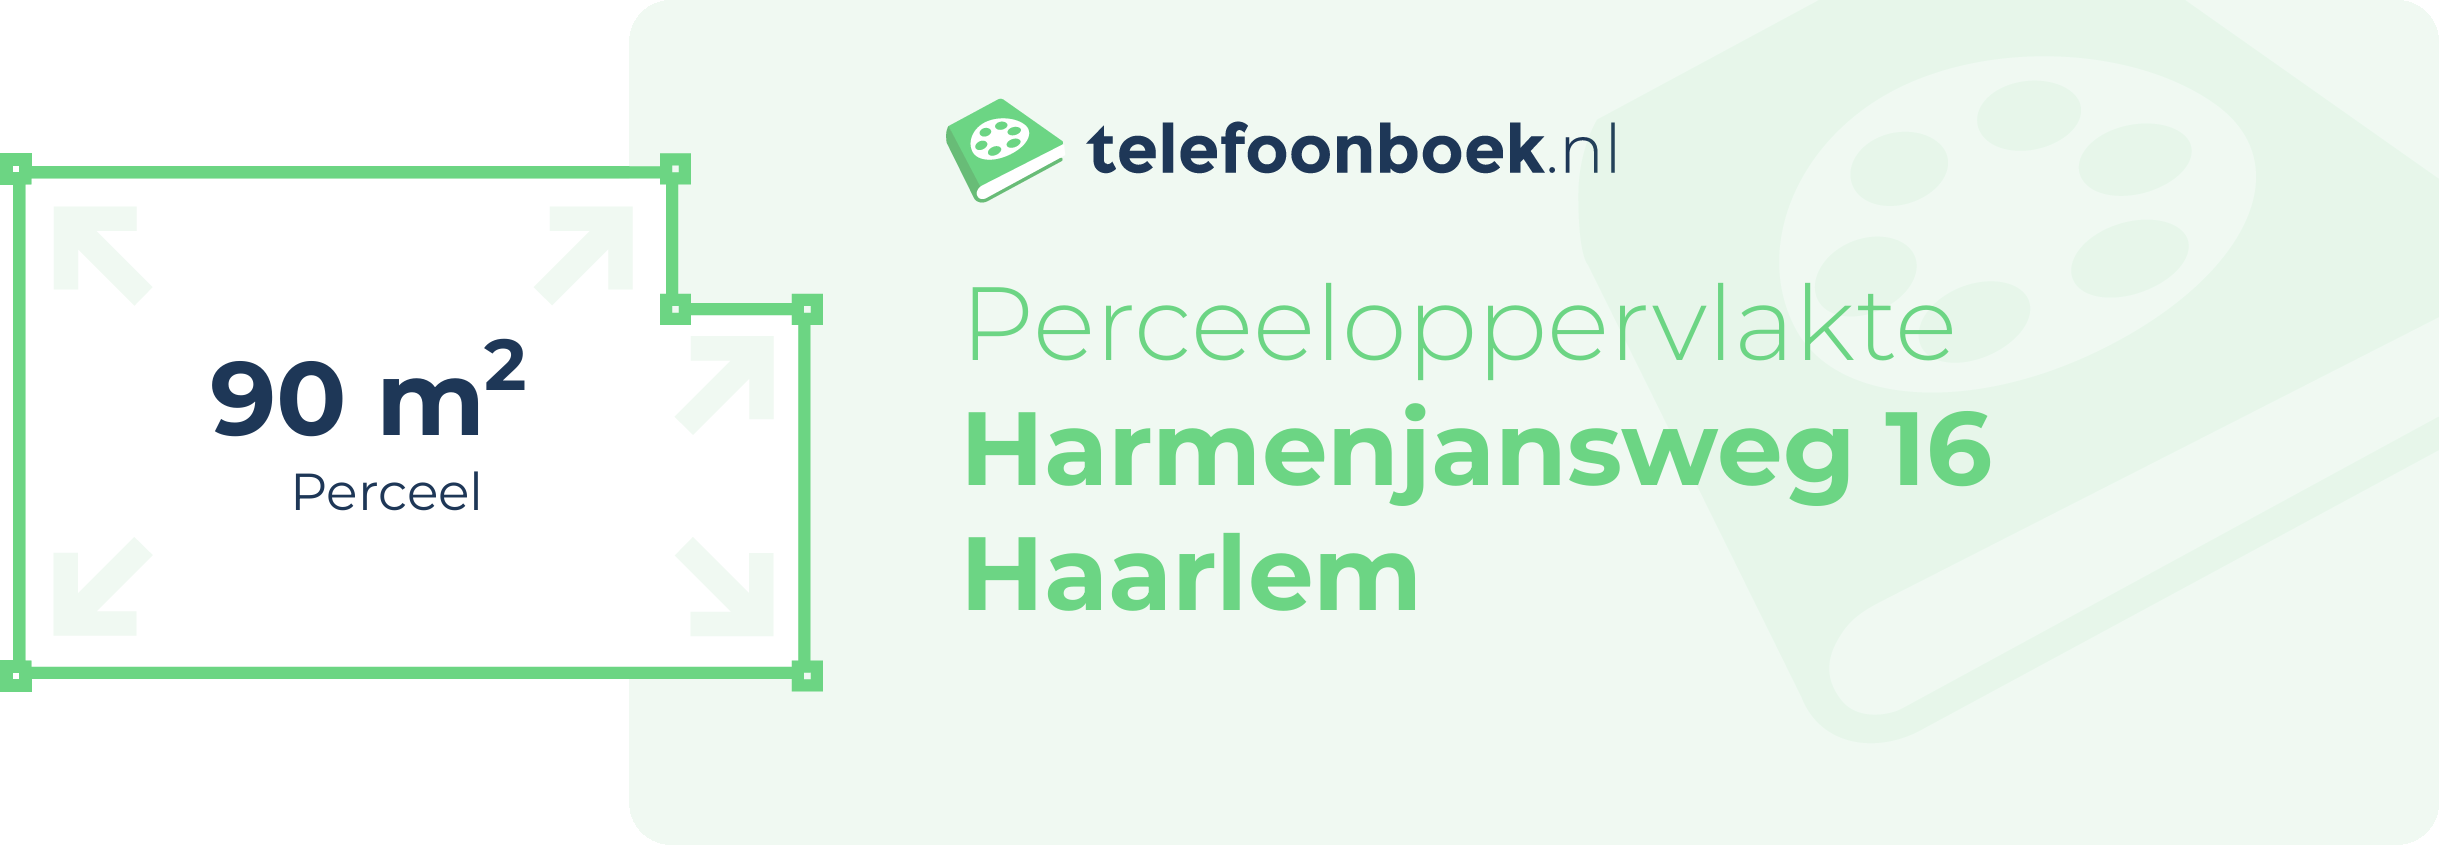 Perceeloppervlakte Harmenjansweg 16 Haarlem